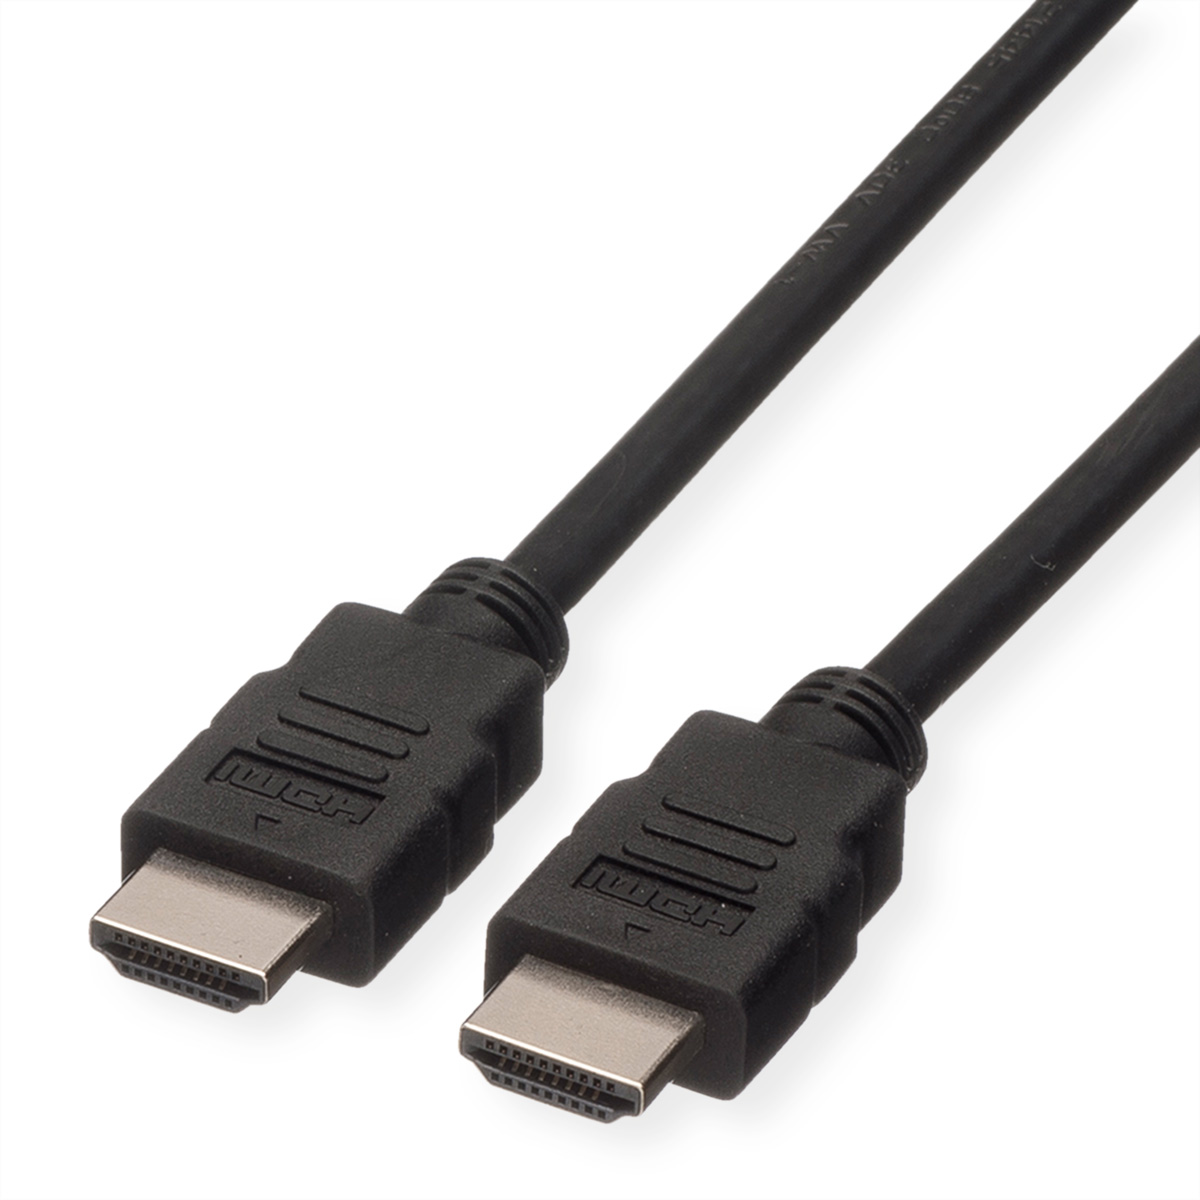 ROLINE GREEN HDMI High Speed Kabel mit Ethernet, TPE, schwarz, 2 m